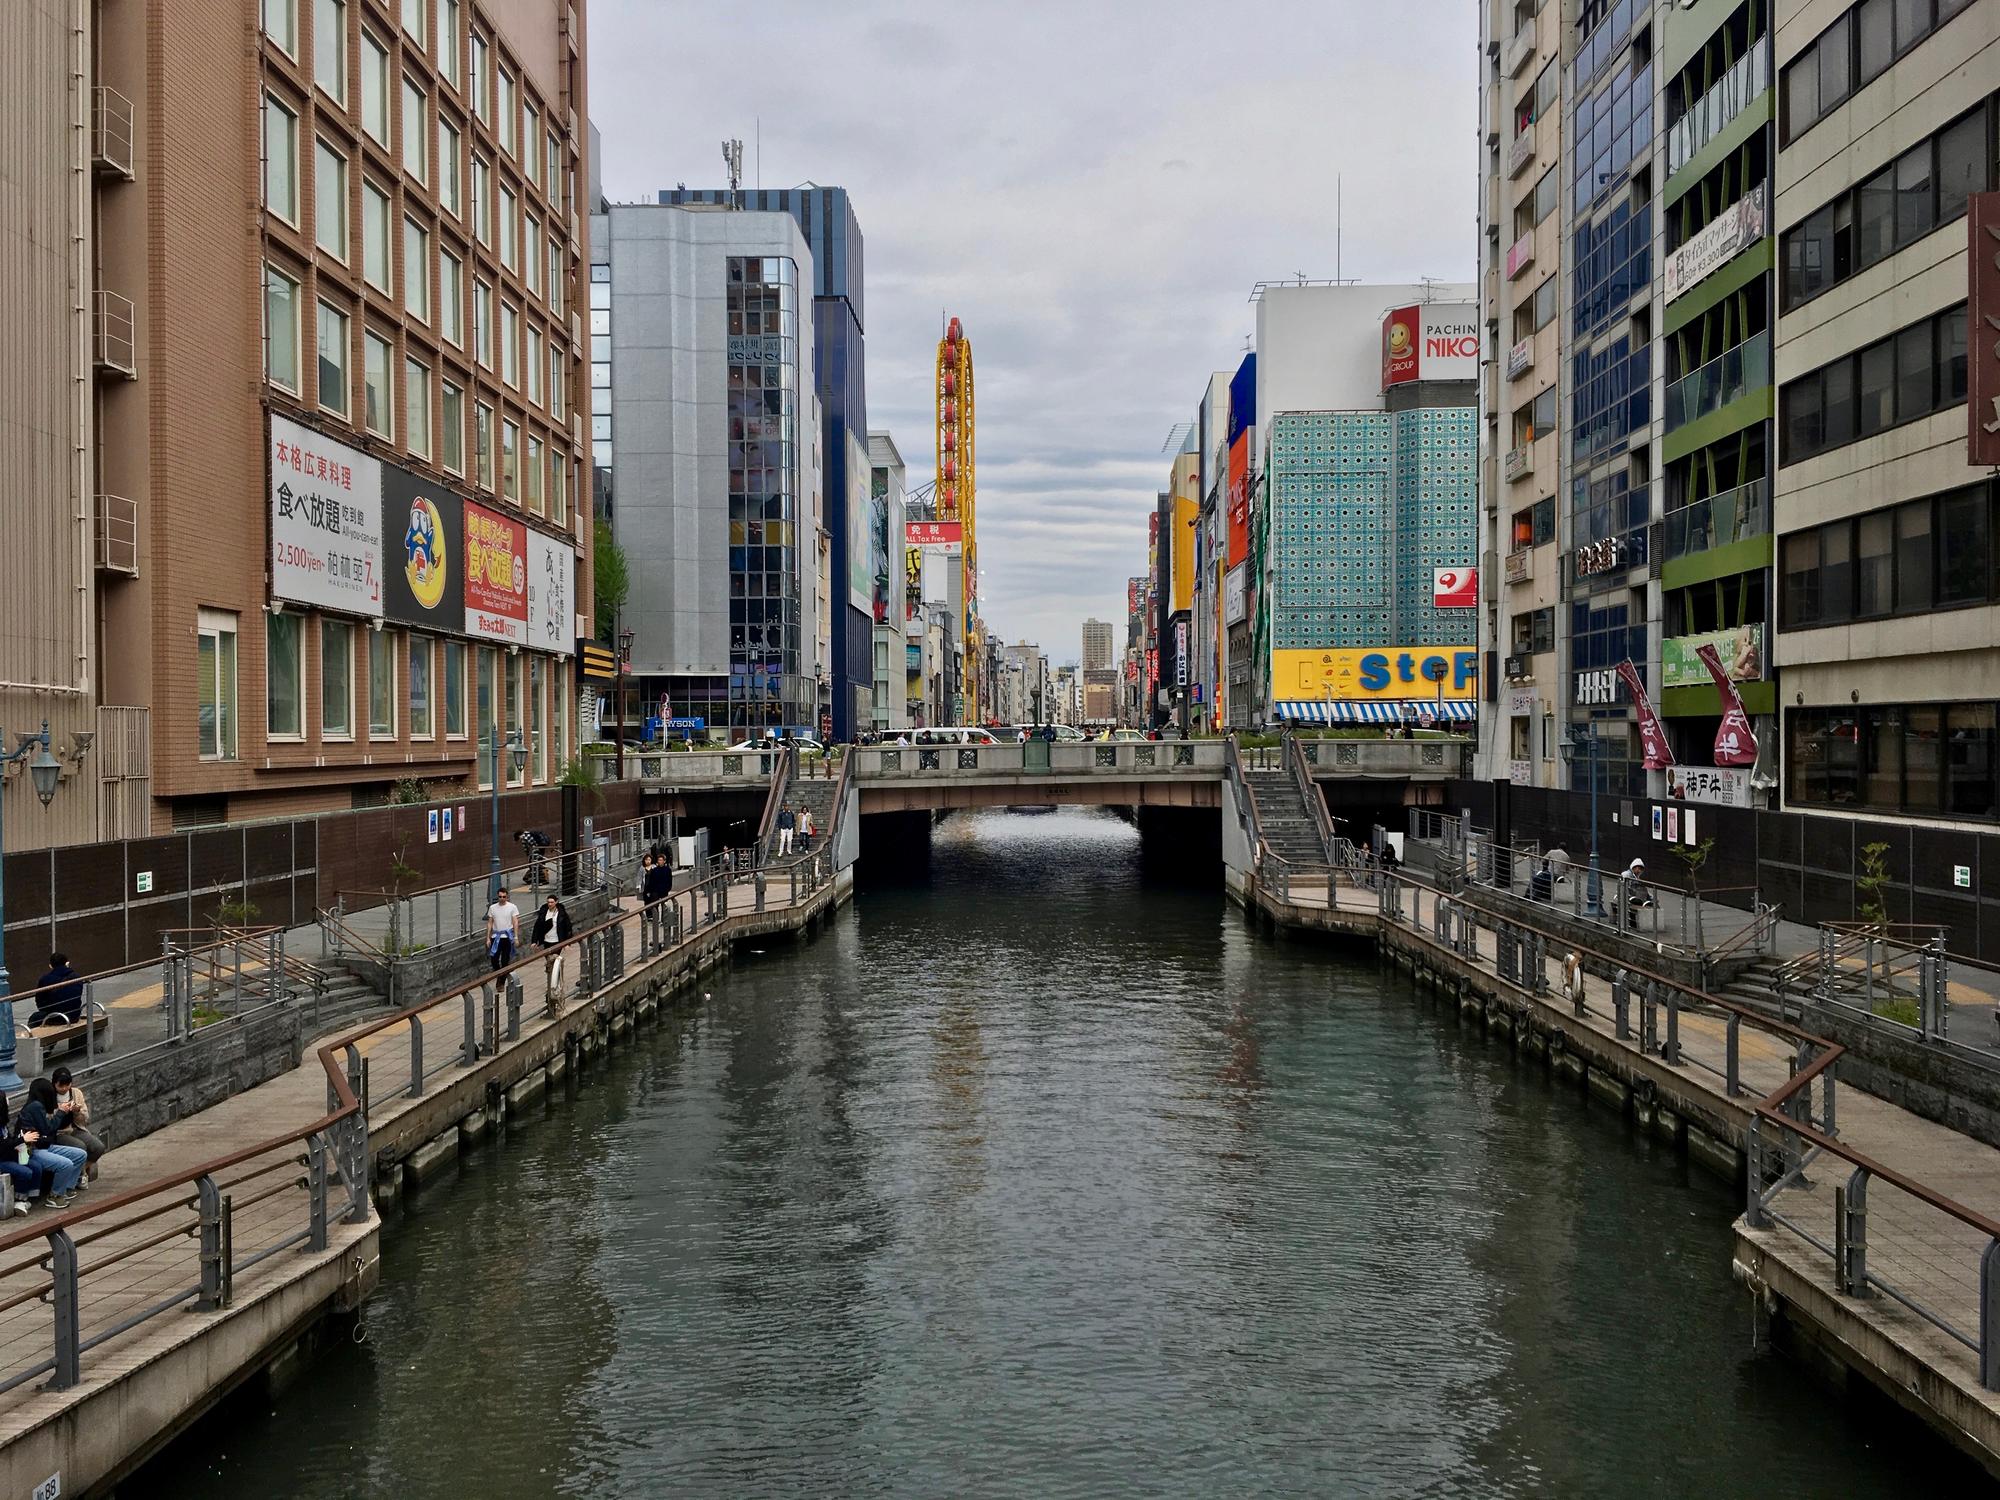 🇯🇵 Osaka, Japan, April 2019.